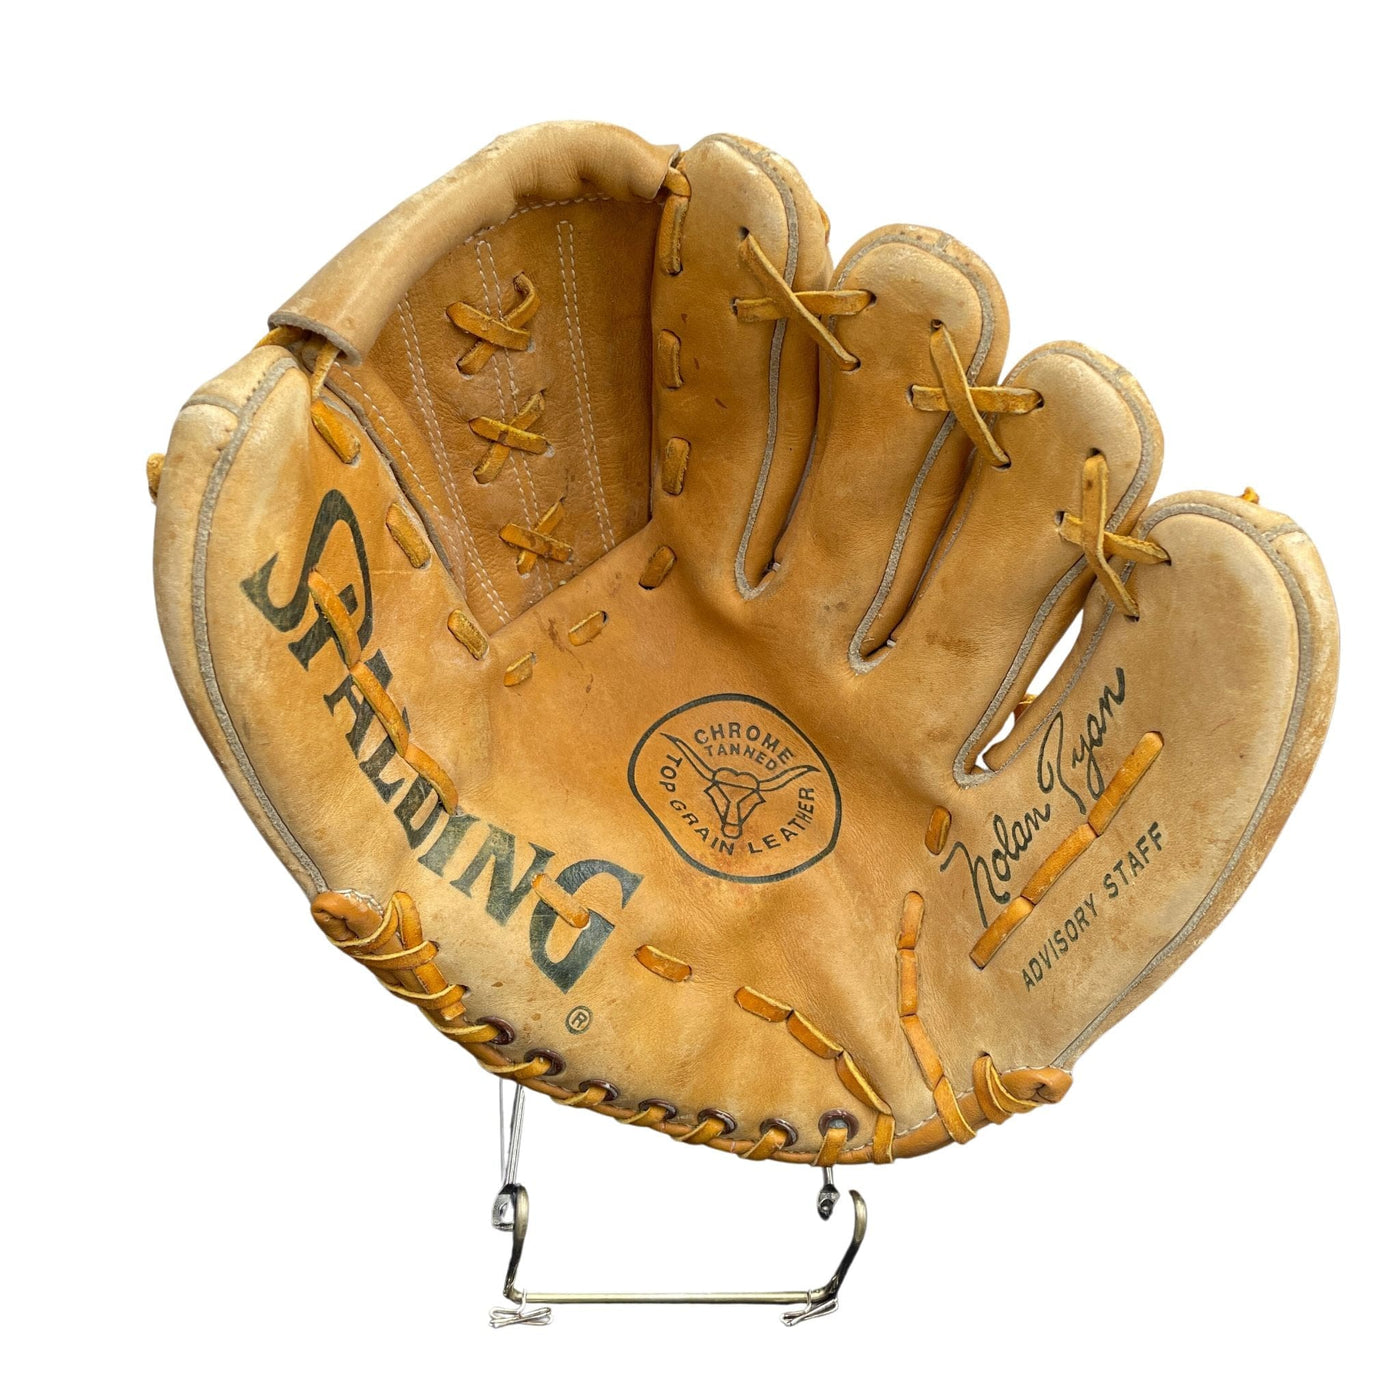 Nolan Ryan Baseball Glove - G002